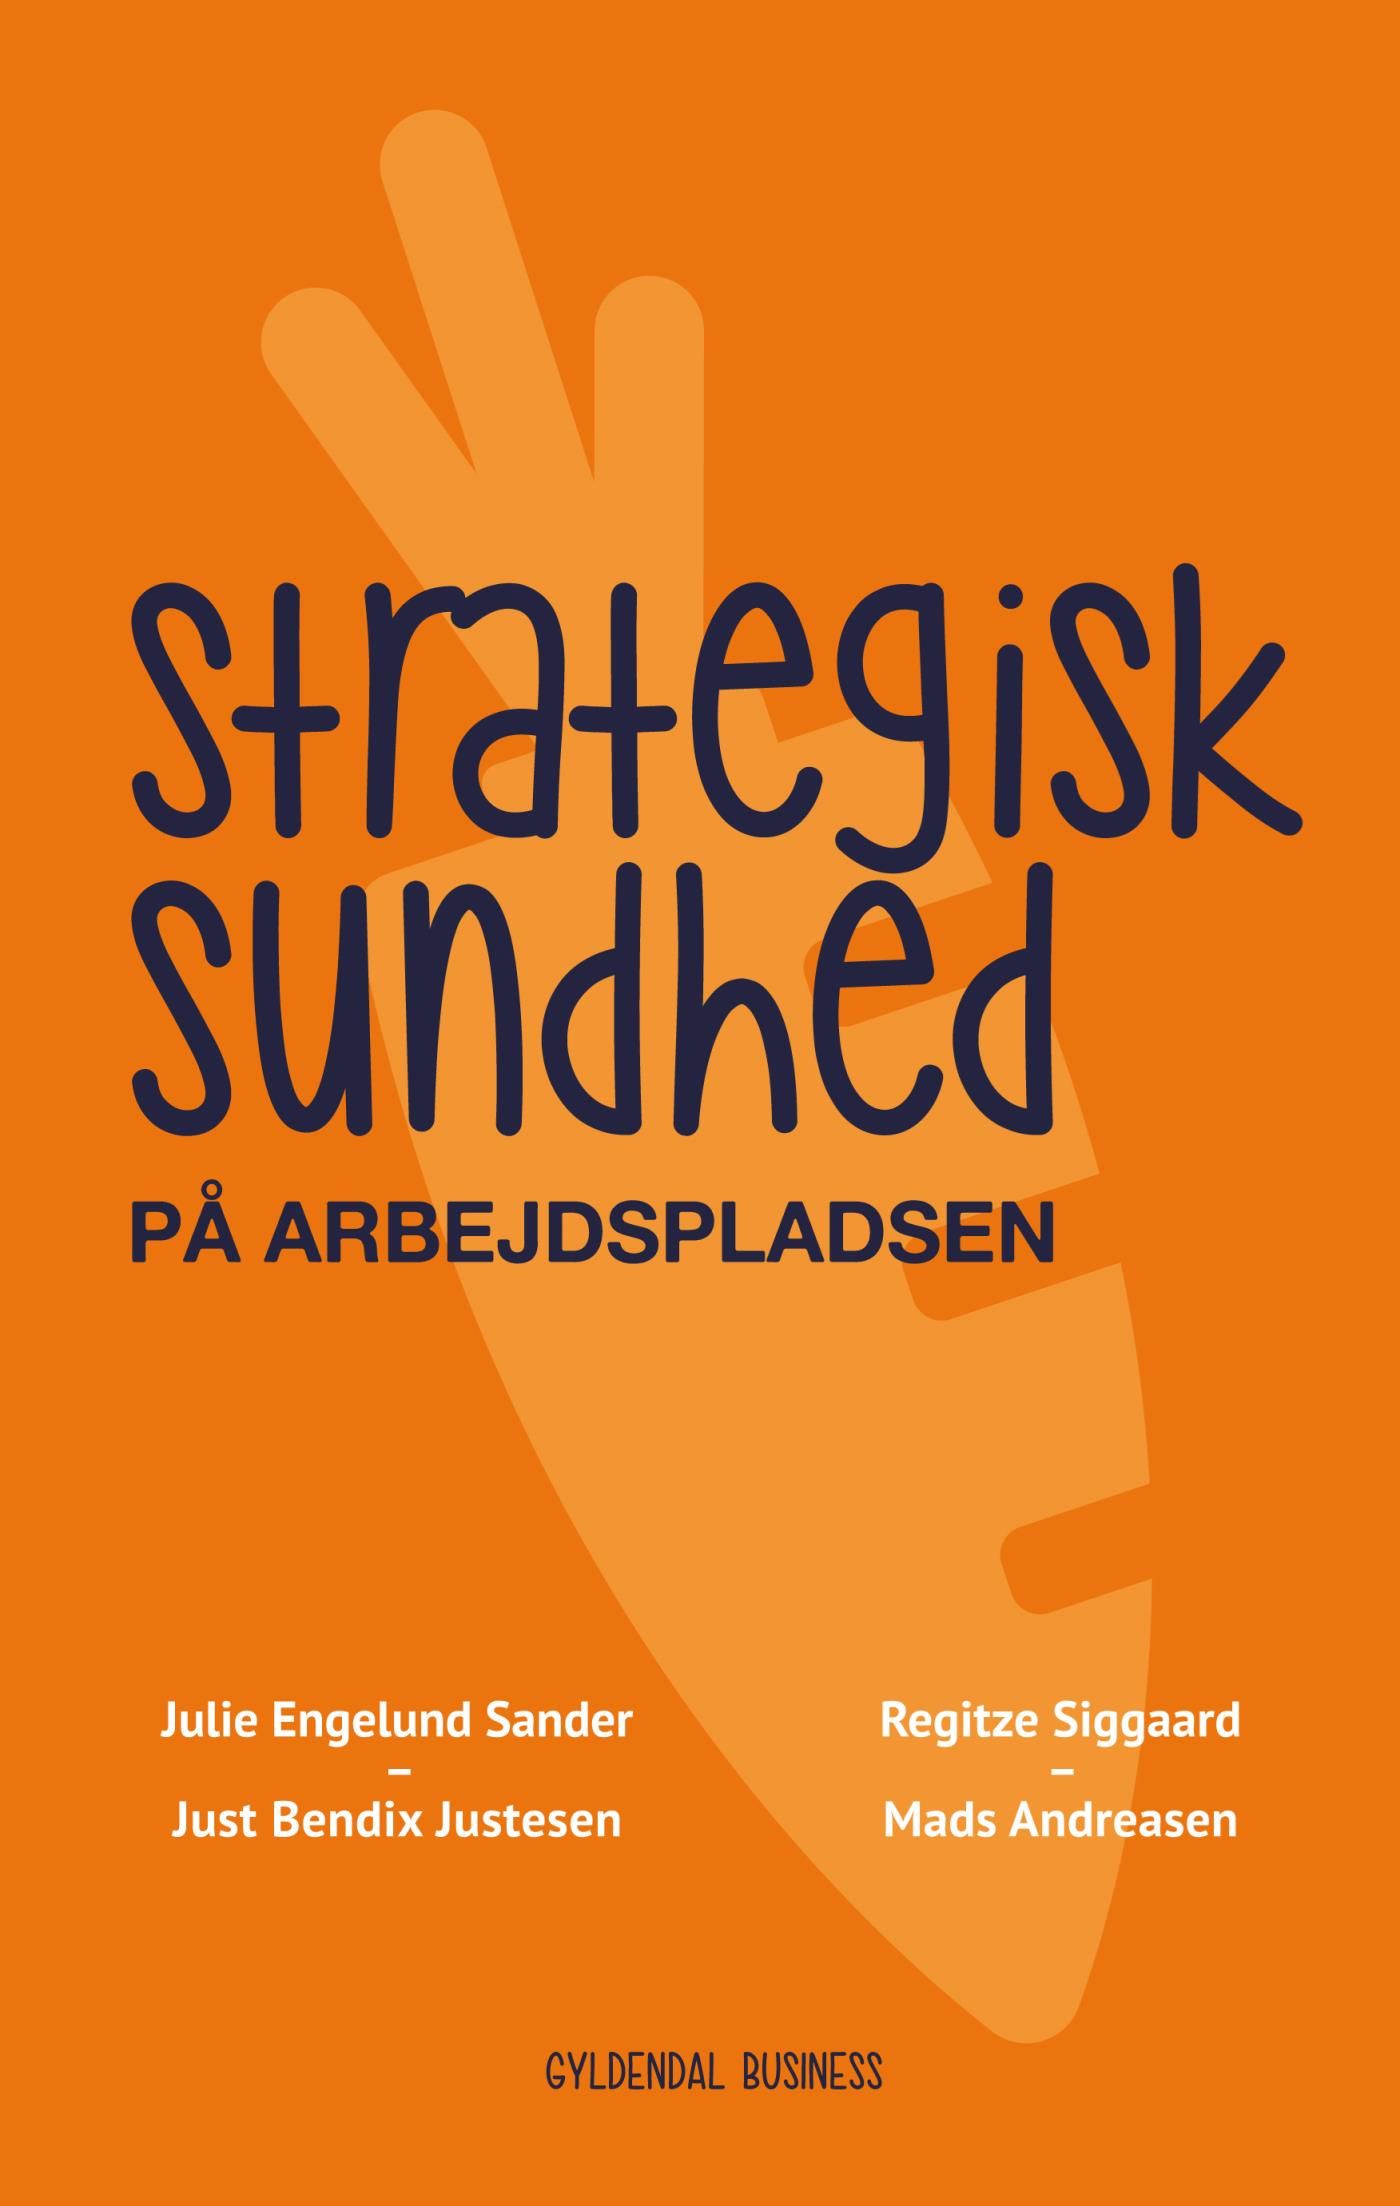 Strategisk sundhed på arbejdspladsen, e-bog af Mads Andreasen, Just Bendix Justesen, Julie Engelund Sander, Regitze Siggaard